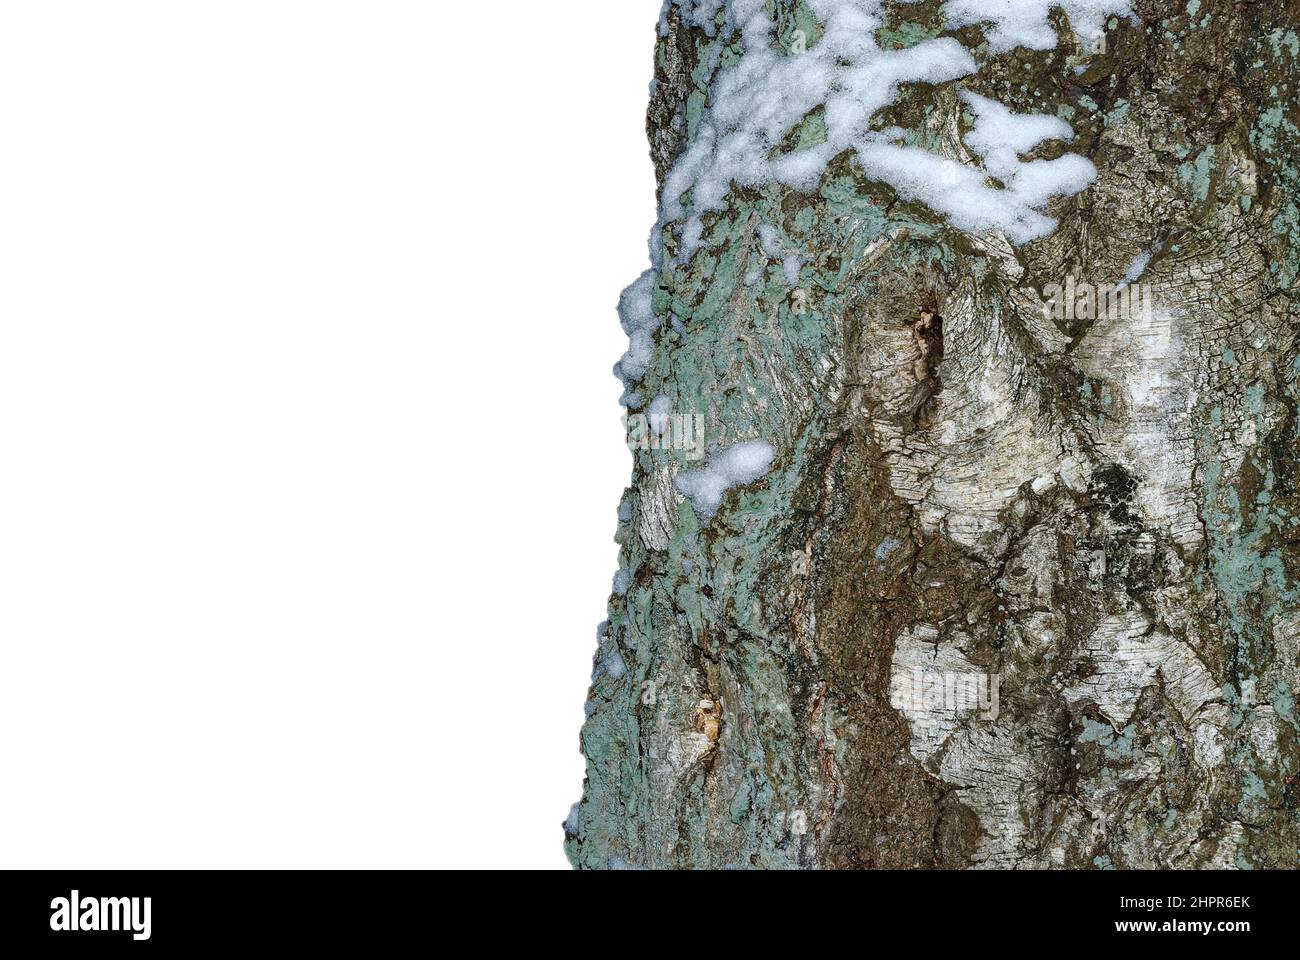 tronc d'arbre de près, isolé sur fond blanc, avec un peu de neige Banque D'Images